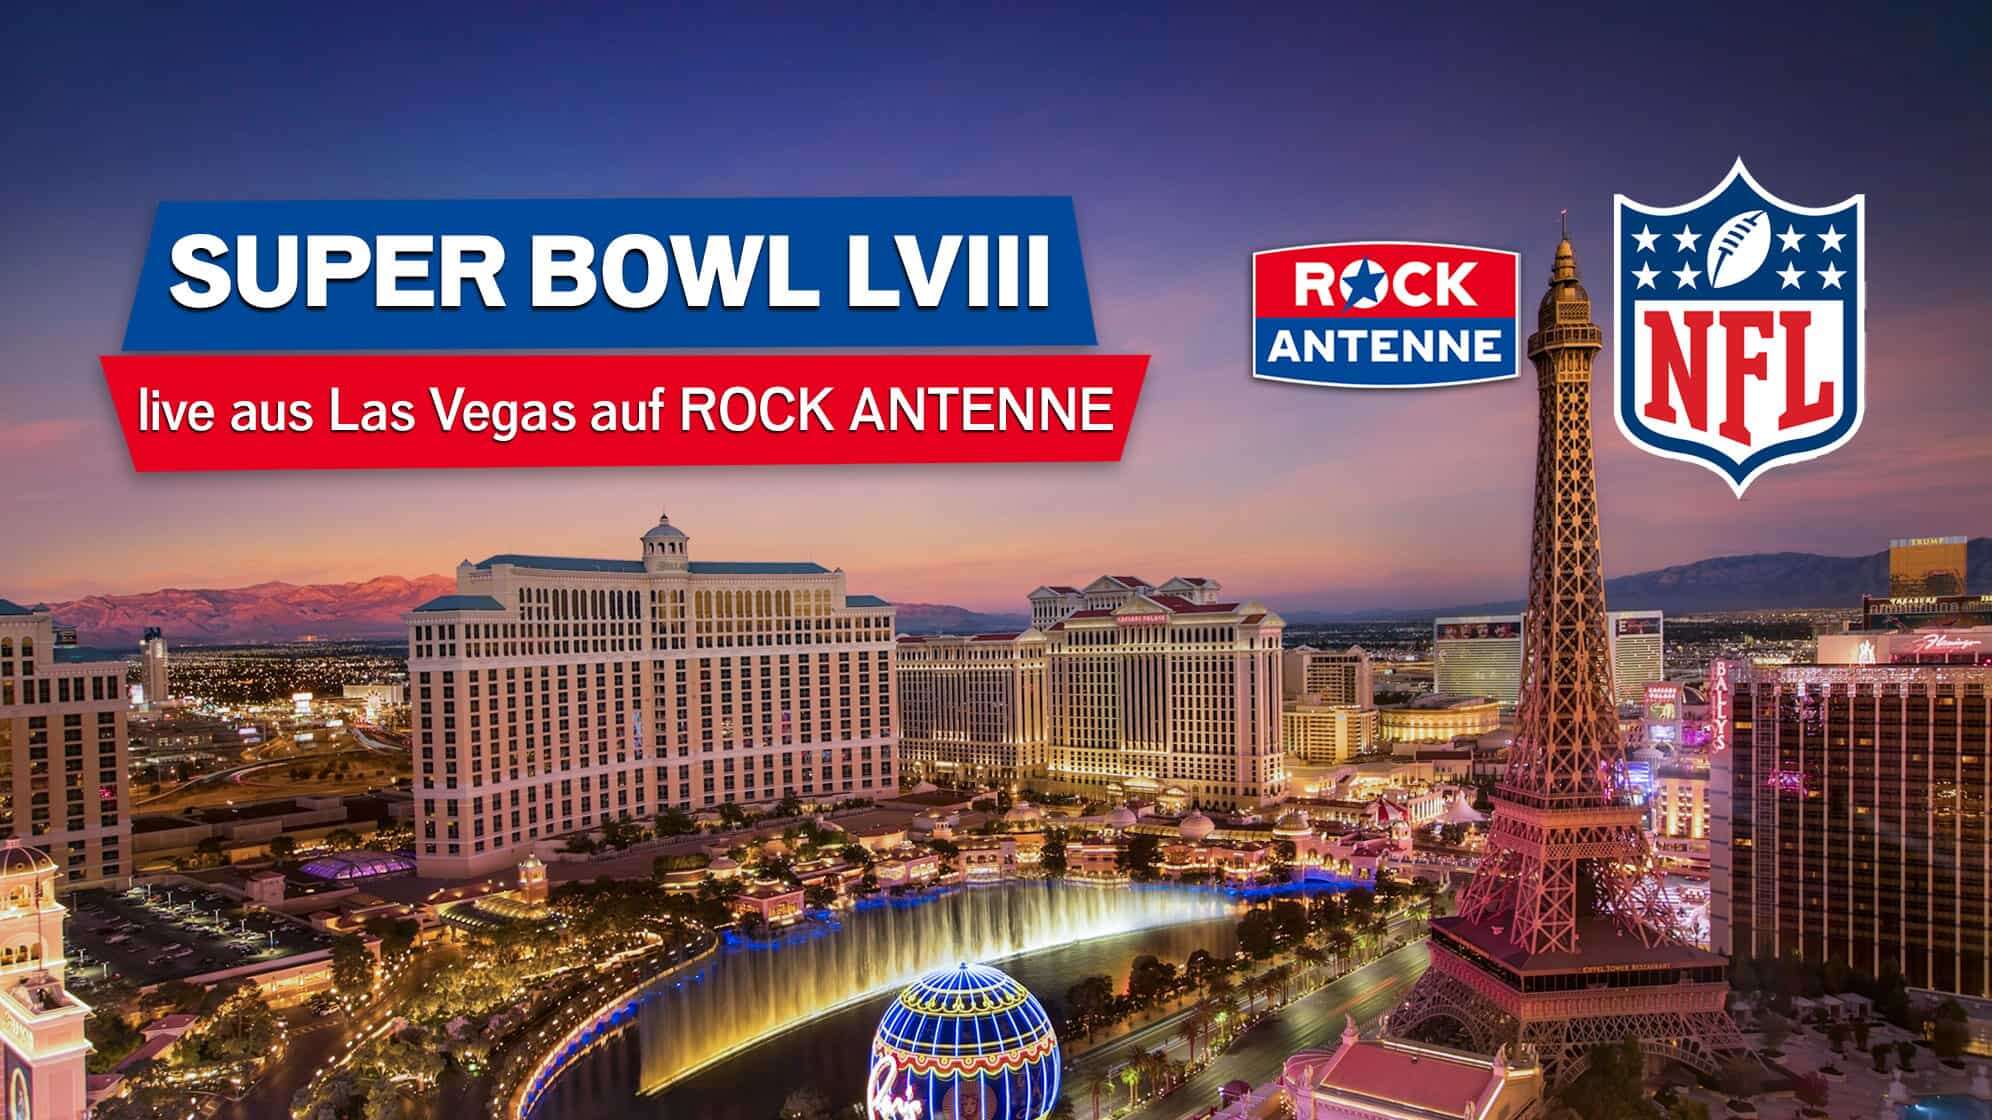 Bild der Skyline von Las Vegas in der Dämmerung mit Text: Super Bowl LVIII - live aus Las Vegas auf ROCK ANTENNE, und die Logos von ROCK ANTENNE und der NFL